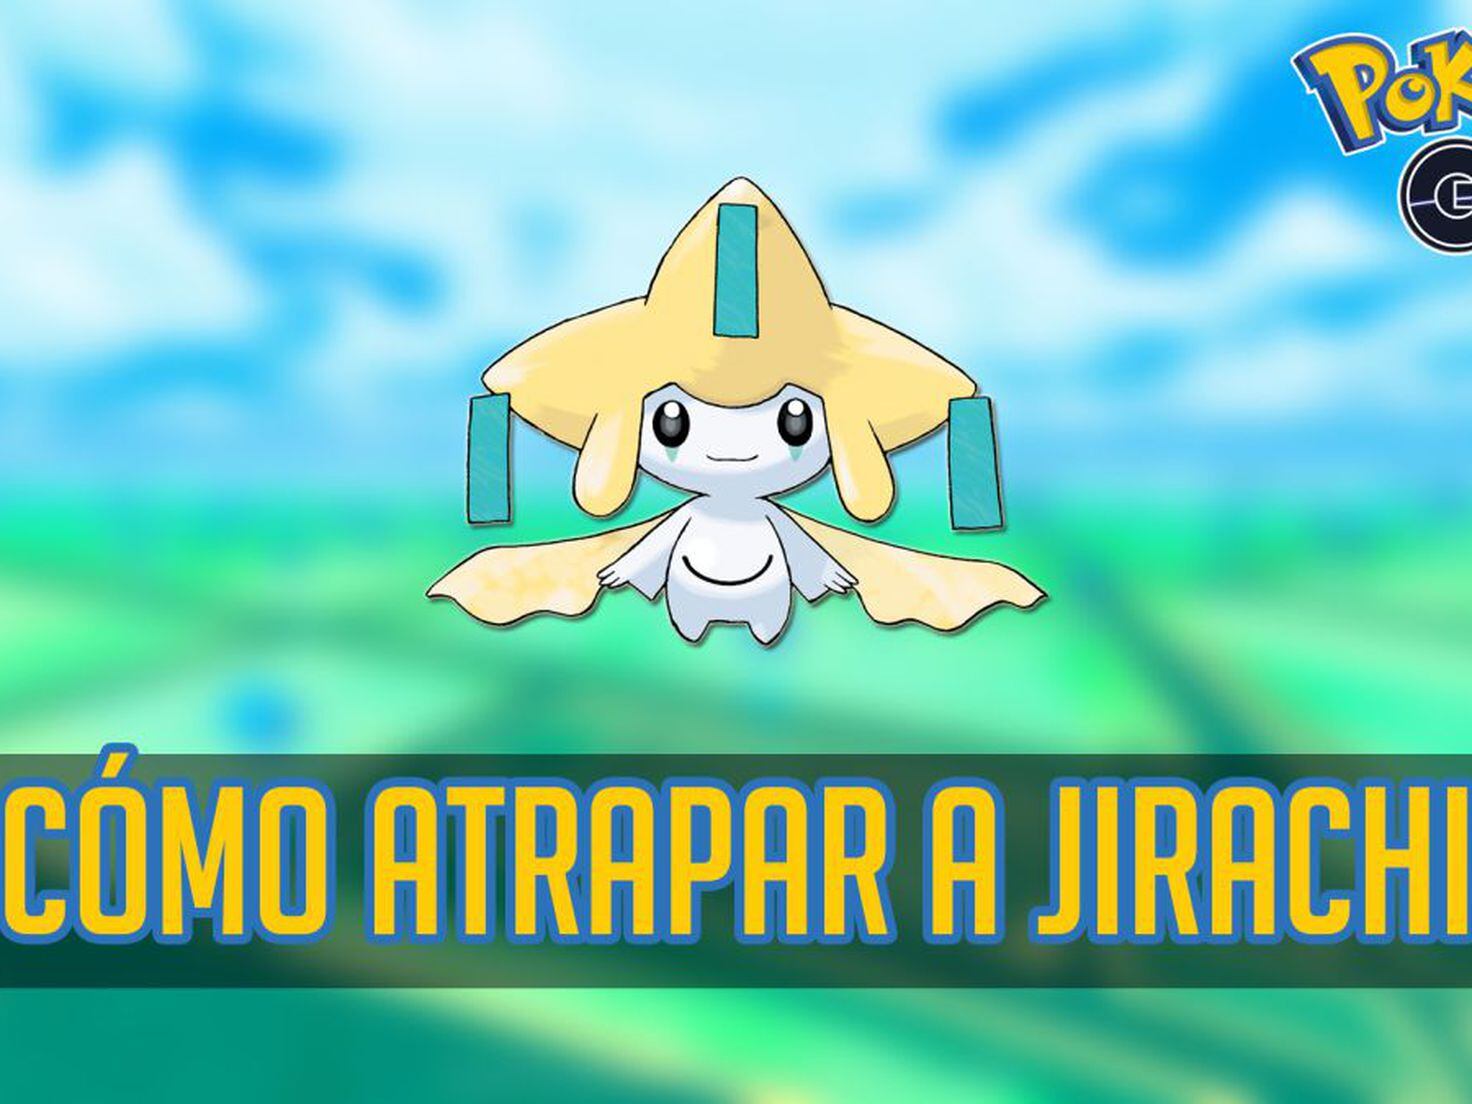 How to catch Pokémon #385 Jirachi in Pokémon GO - Meristation